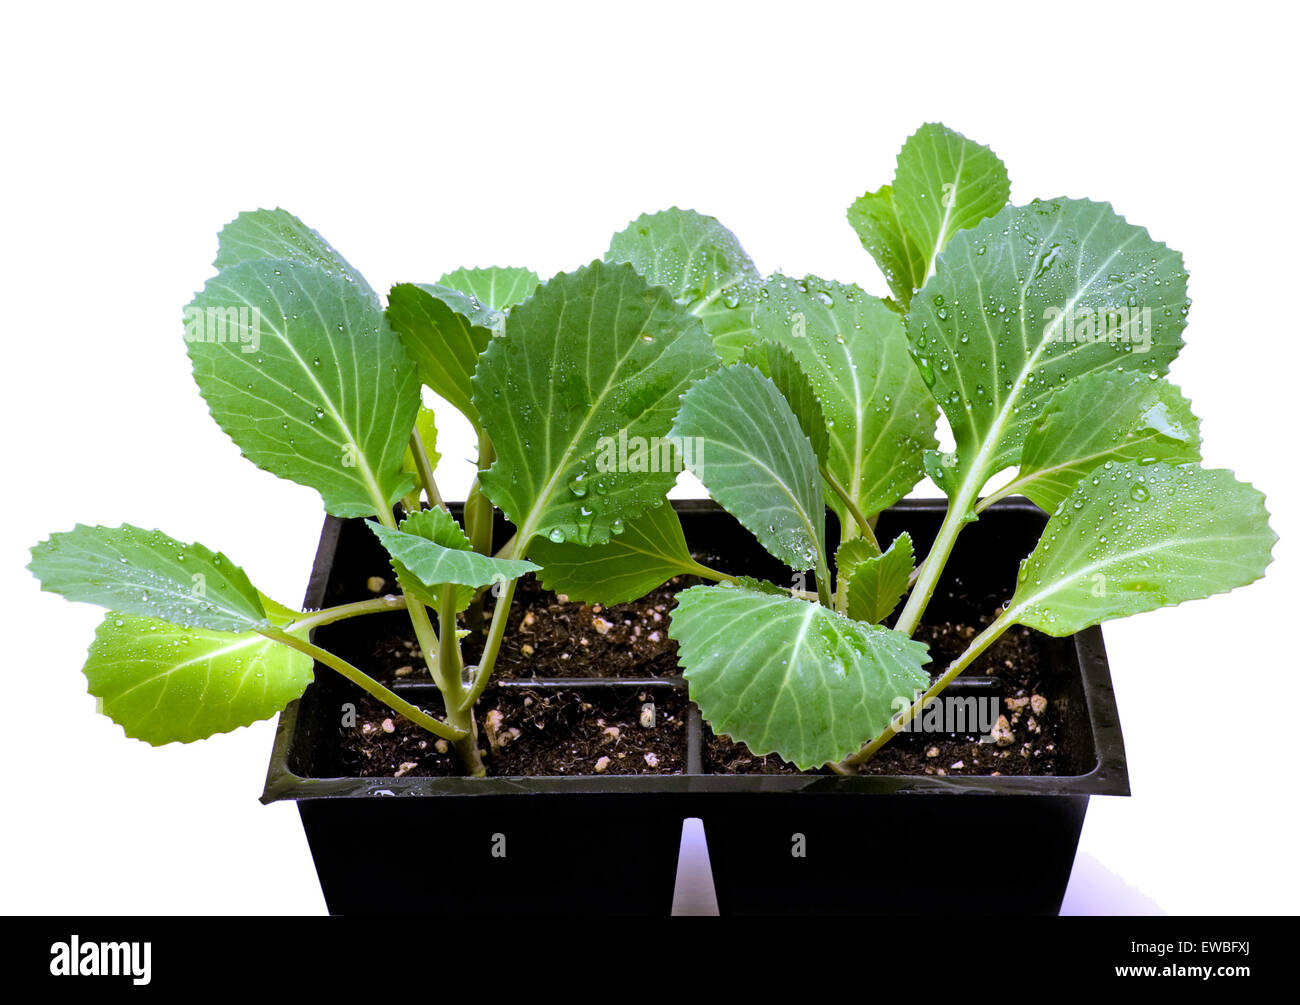 Giovani piante vegetali pronto per l'impianto. Isolato su uno sfondo bianco Foto Stock